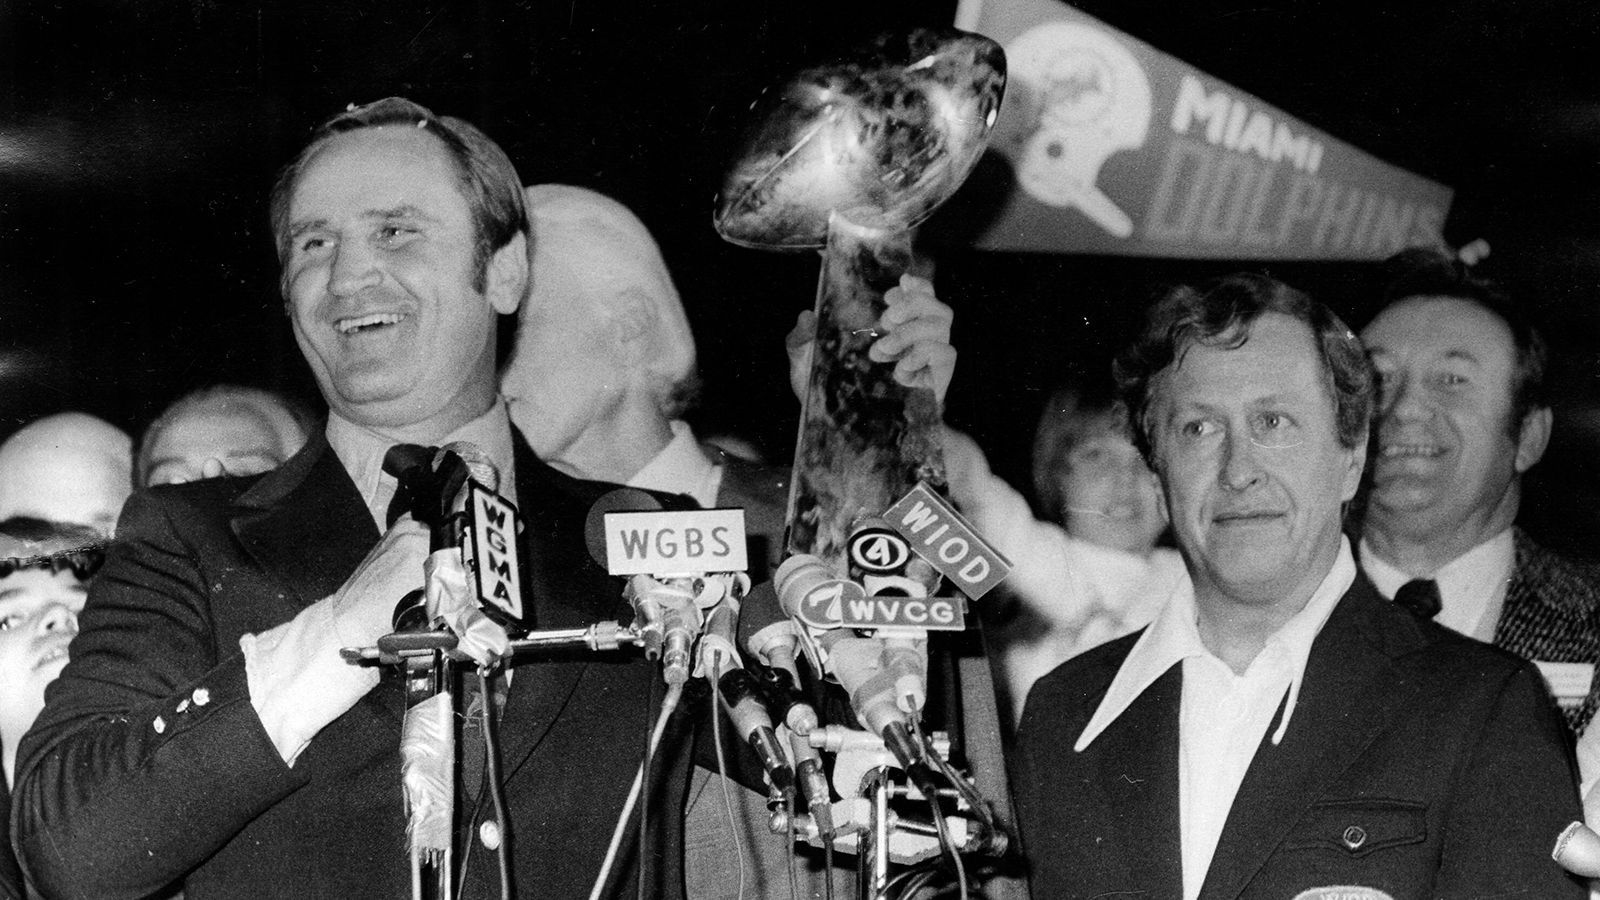 
                <strong>Die verrückte Geschichte um die Vince Lombardi Trophy</strong><br>
                Bis zum Super Bowl IV im Jahr 1970 entwickelte sich ein echter Mythos um das Endspiel zwischen NFL und AFL, zwei Mal gewann jede Liga das große Finale. Anschließend schlossen sich die beiden Ligen zusammen, ein Meilenstein auch für den Super Bowl. Von Beginn an gewann das Sieger-Team den berühmten Silber-Pokal in Form eines Footballs. Dieser hieß zu Beginn "World Championship Game Trophy" - entwickelt vom Schweizer Oscar Riedener. Beim Frühstück starrte er einen Football an, schnitt die Cornflakes-Packung, die vor ihm lag, zurecht und legte den Ball oben drauf. Fertig war die Trophäe. Nach dem Tod von Vince Lombardi 1970 wurde der Pokal ab dem Super Bowl V im Jahr 1971 offiziell "Vince Lombardi Trophy" genannt. 
              